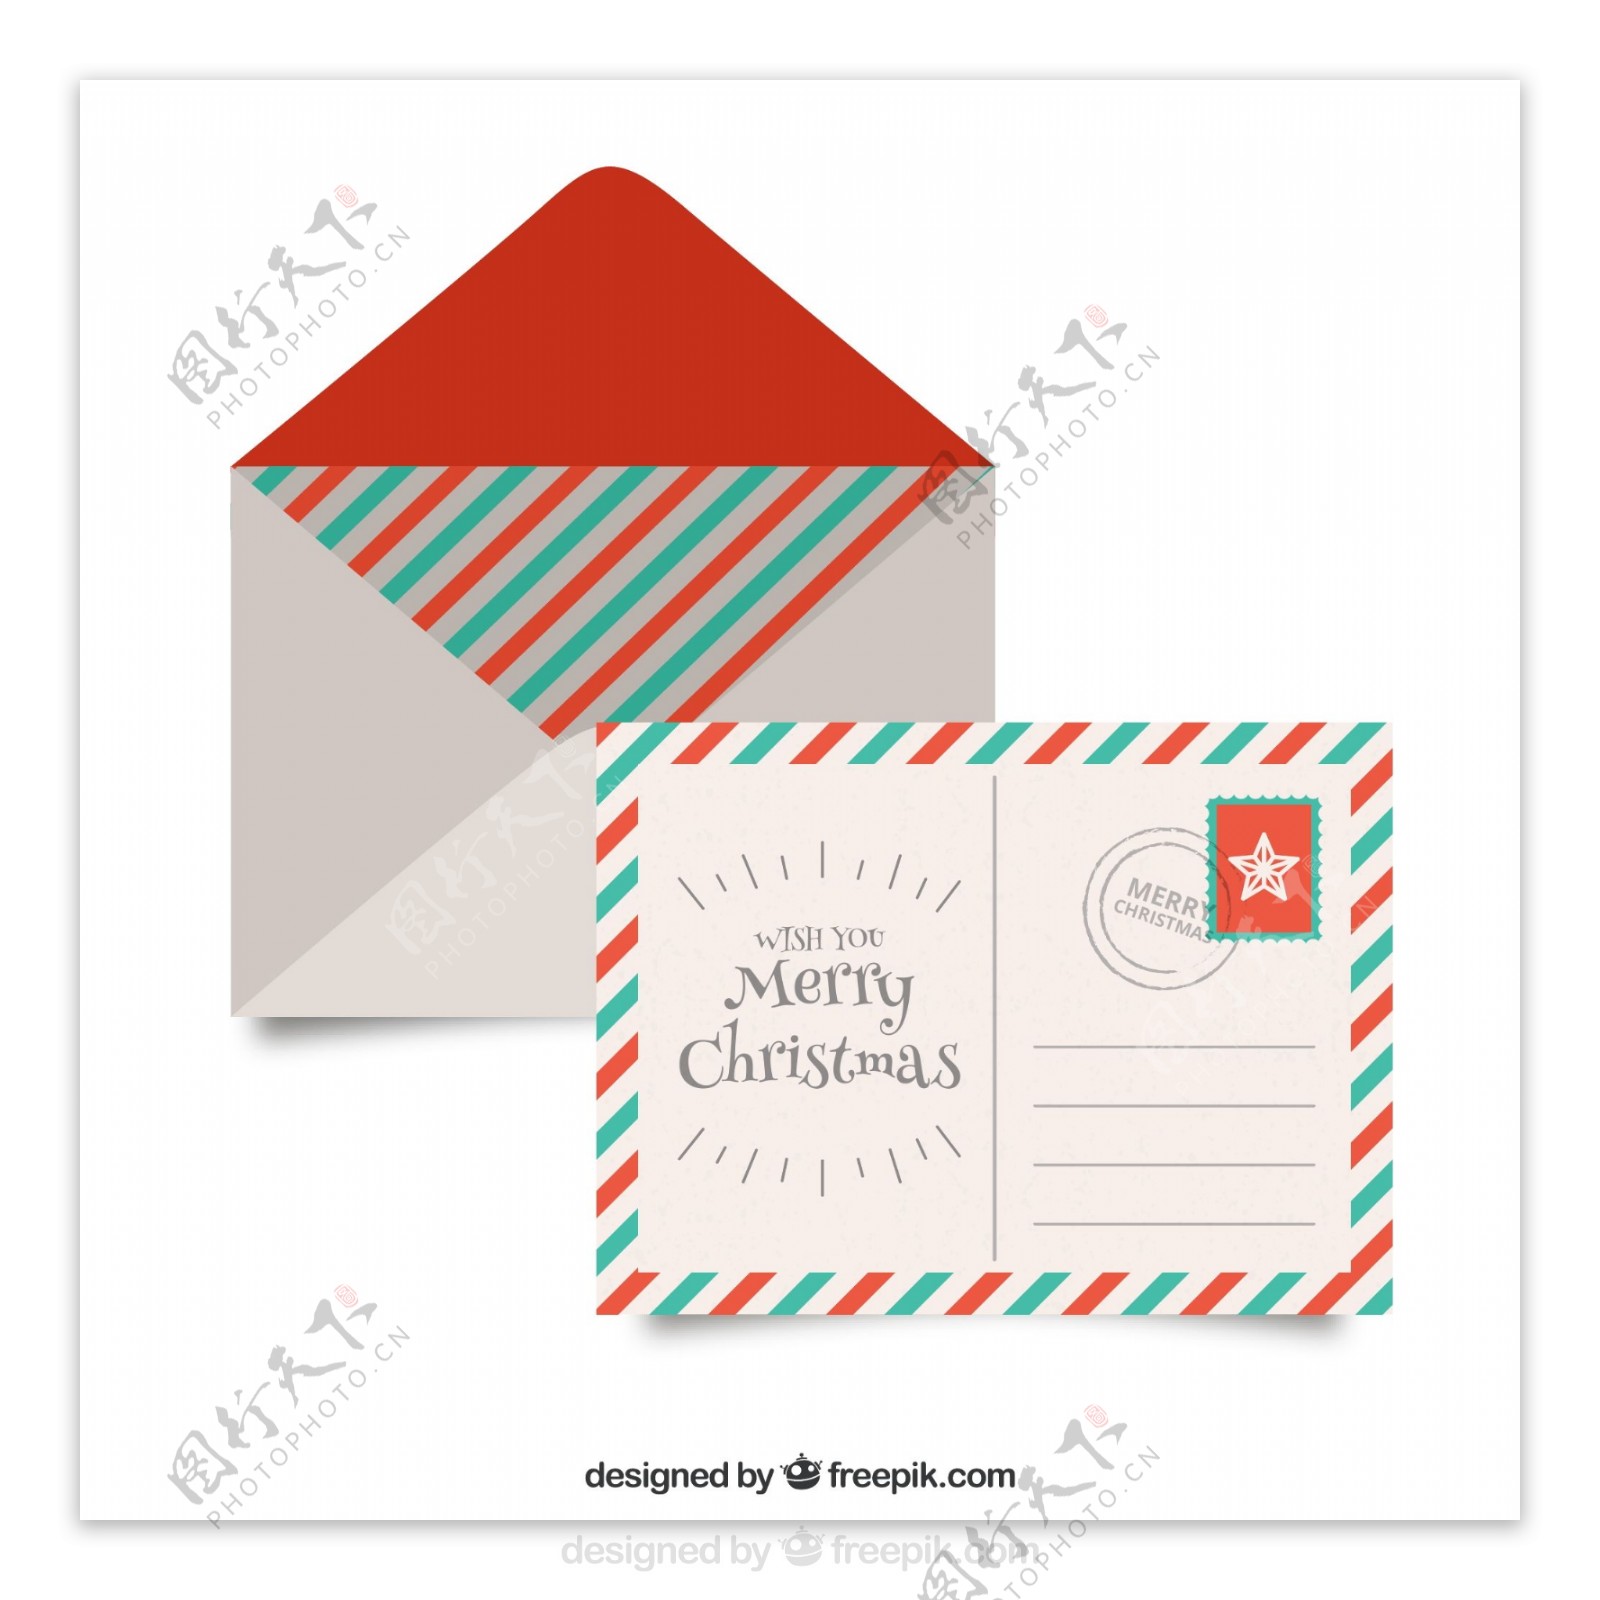 老式风格圣诞信封与明信片